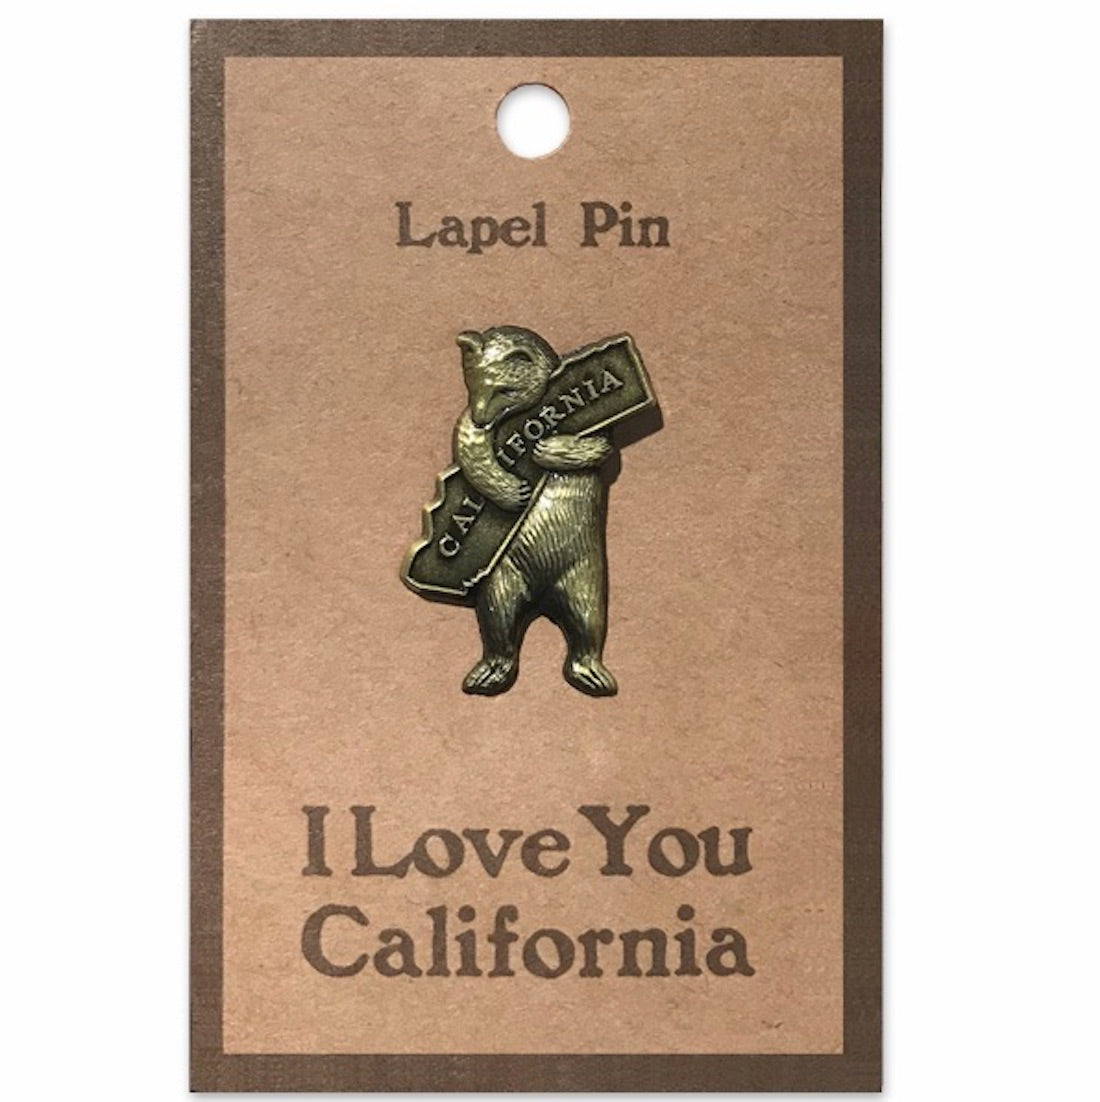 Pin on California